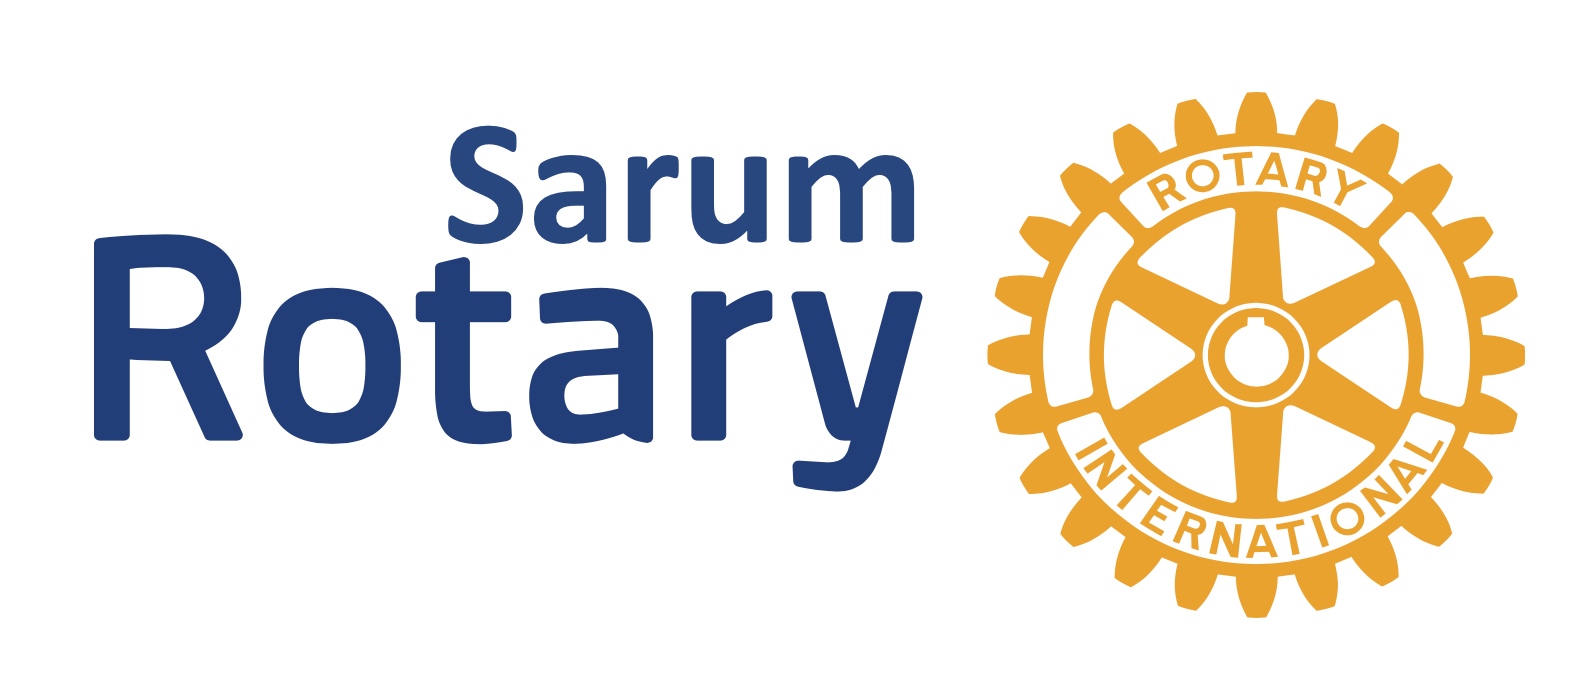 Sarum Rotary logo